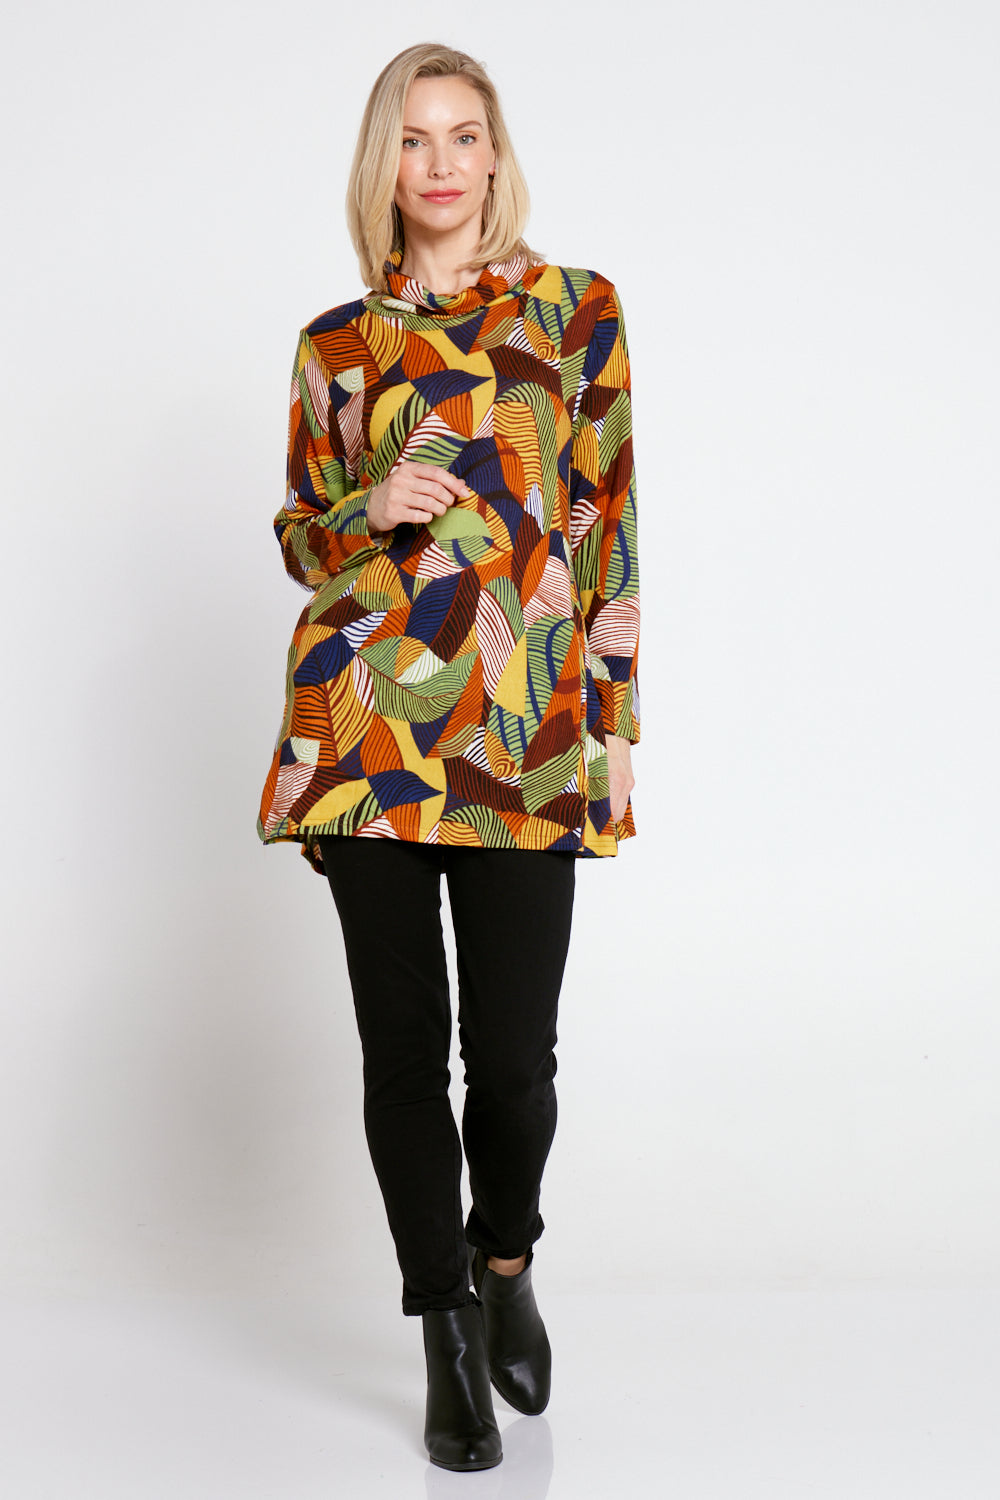 Lina Cowl Knit Tunic - Autumnal